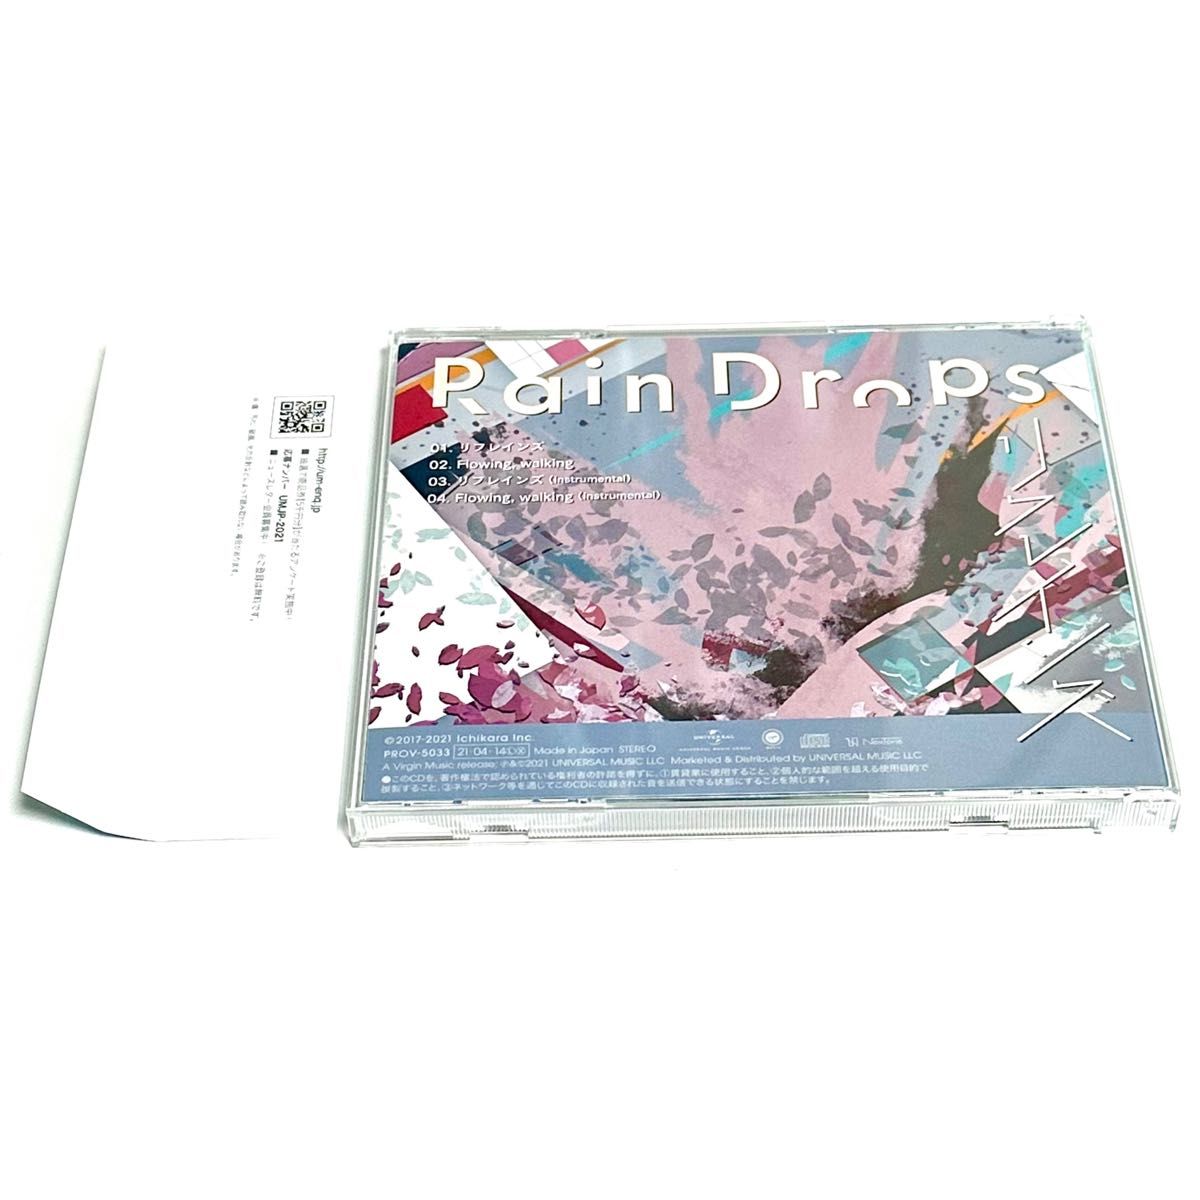 【完全数量生産限定盤】リフレインズ / Rain Drops シリアルナンバー入り CD